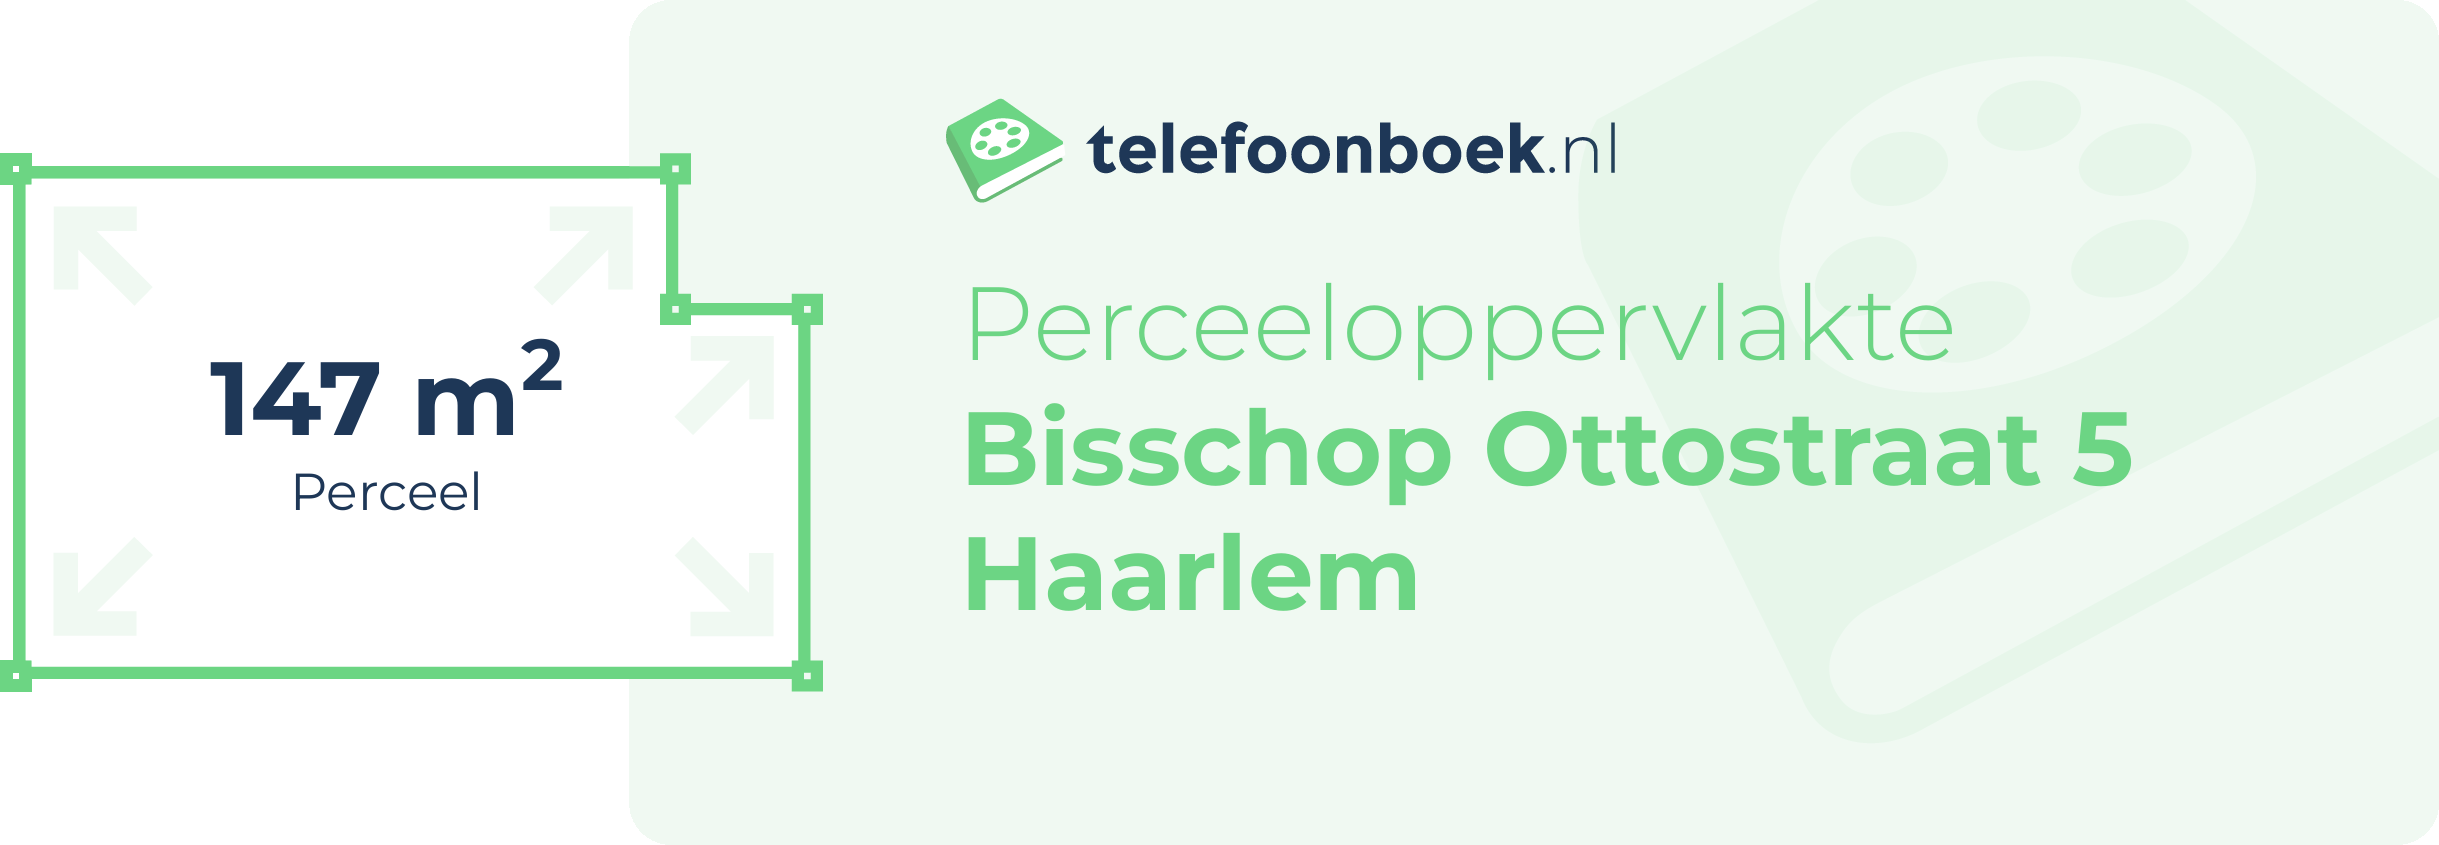 Perceeloppervlakte Bisschop Ottostraat 5 Haarlem